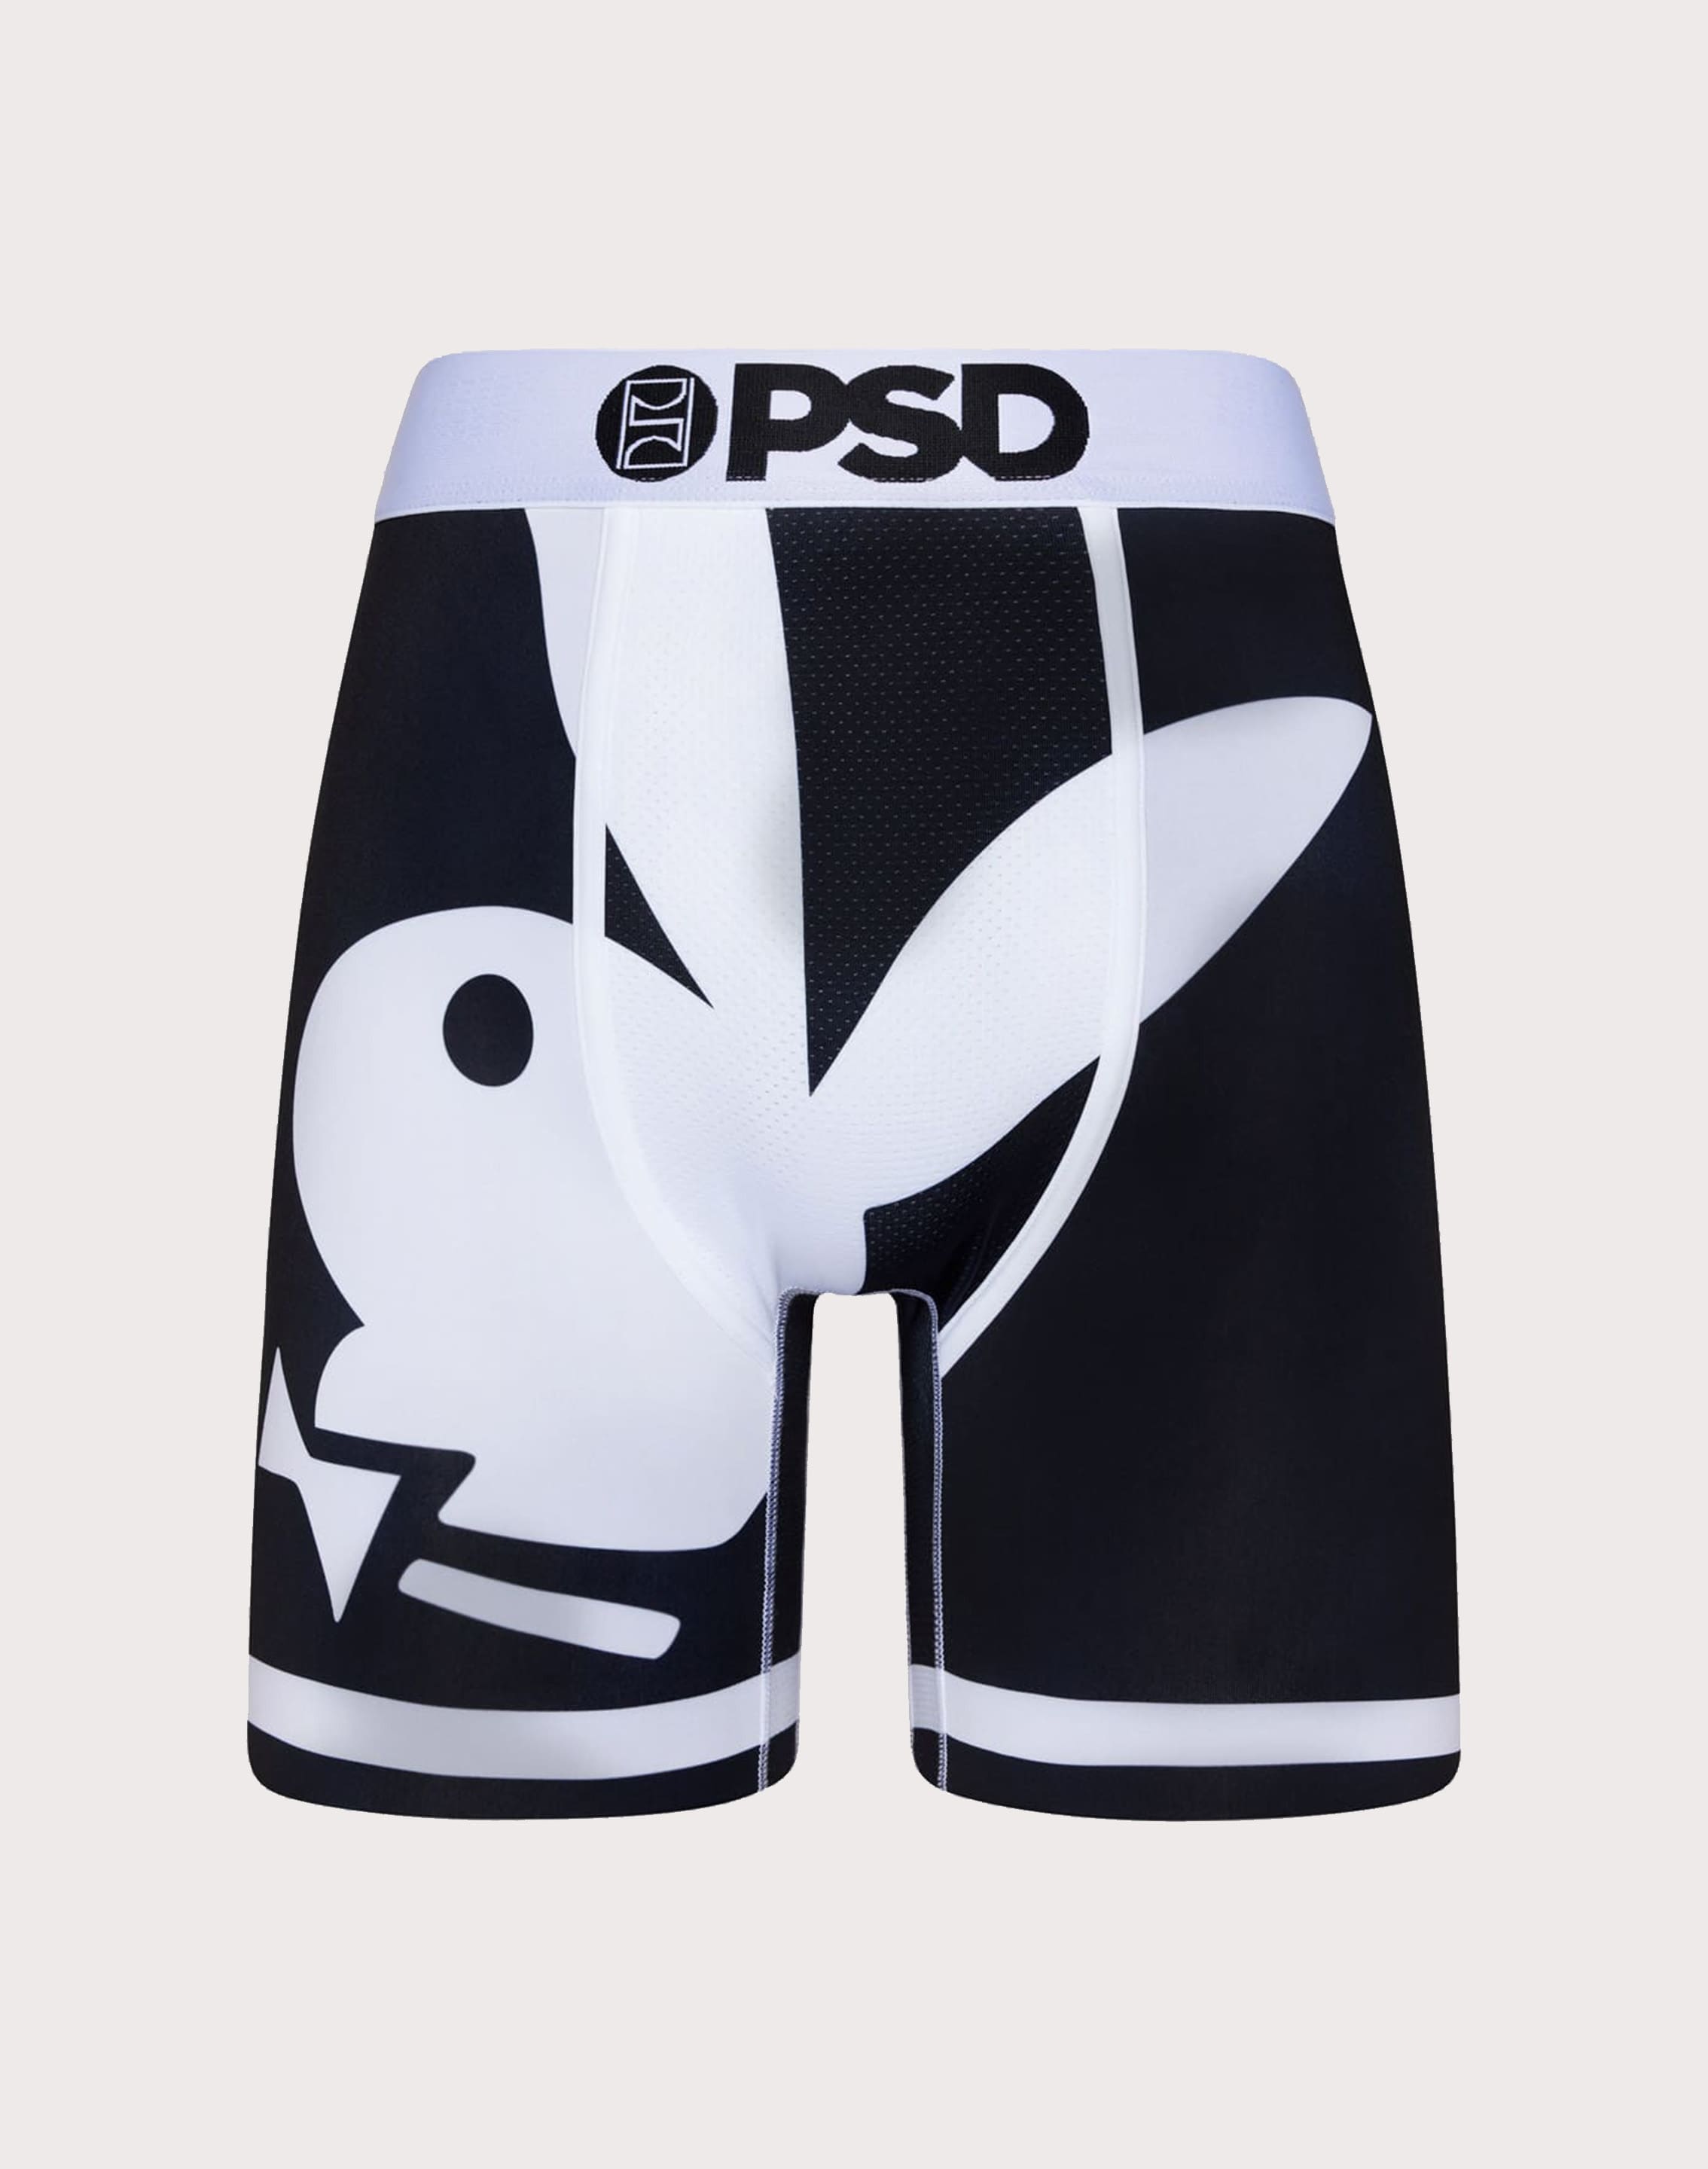 PSD, Accessories, Kids Medium Psd Underwear